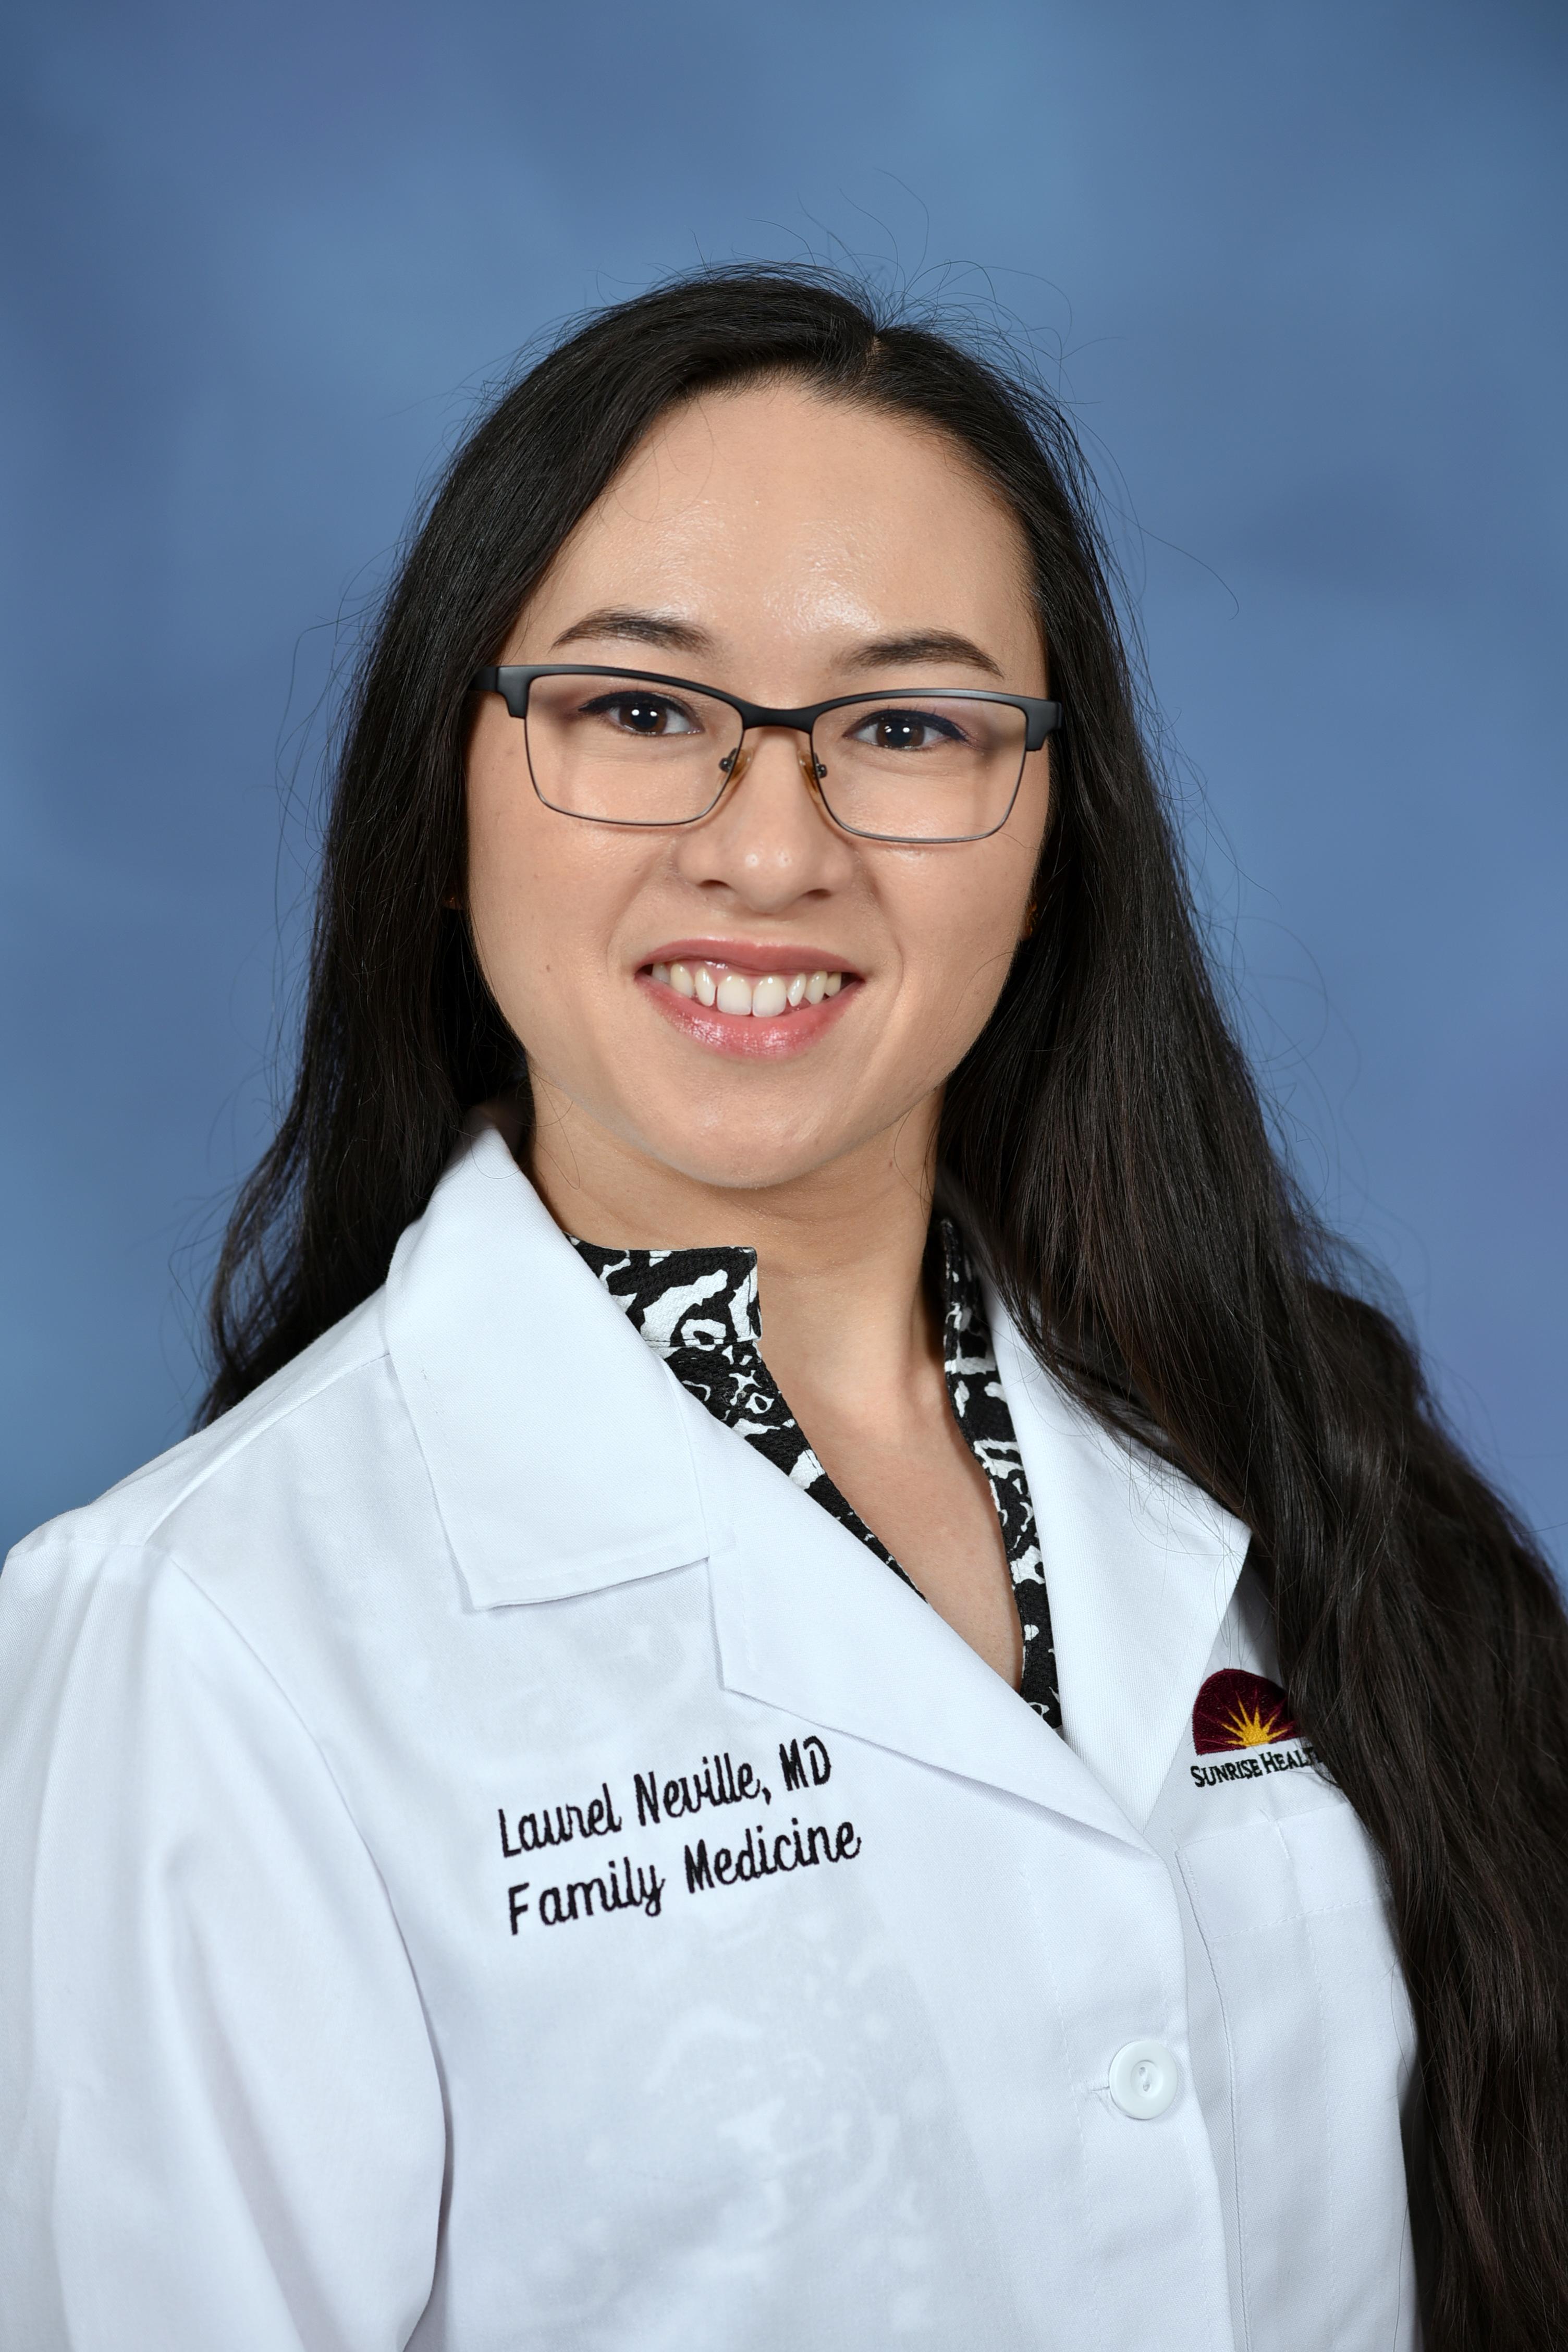 Laurel Neville, MD - Resident Physician